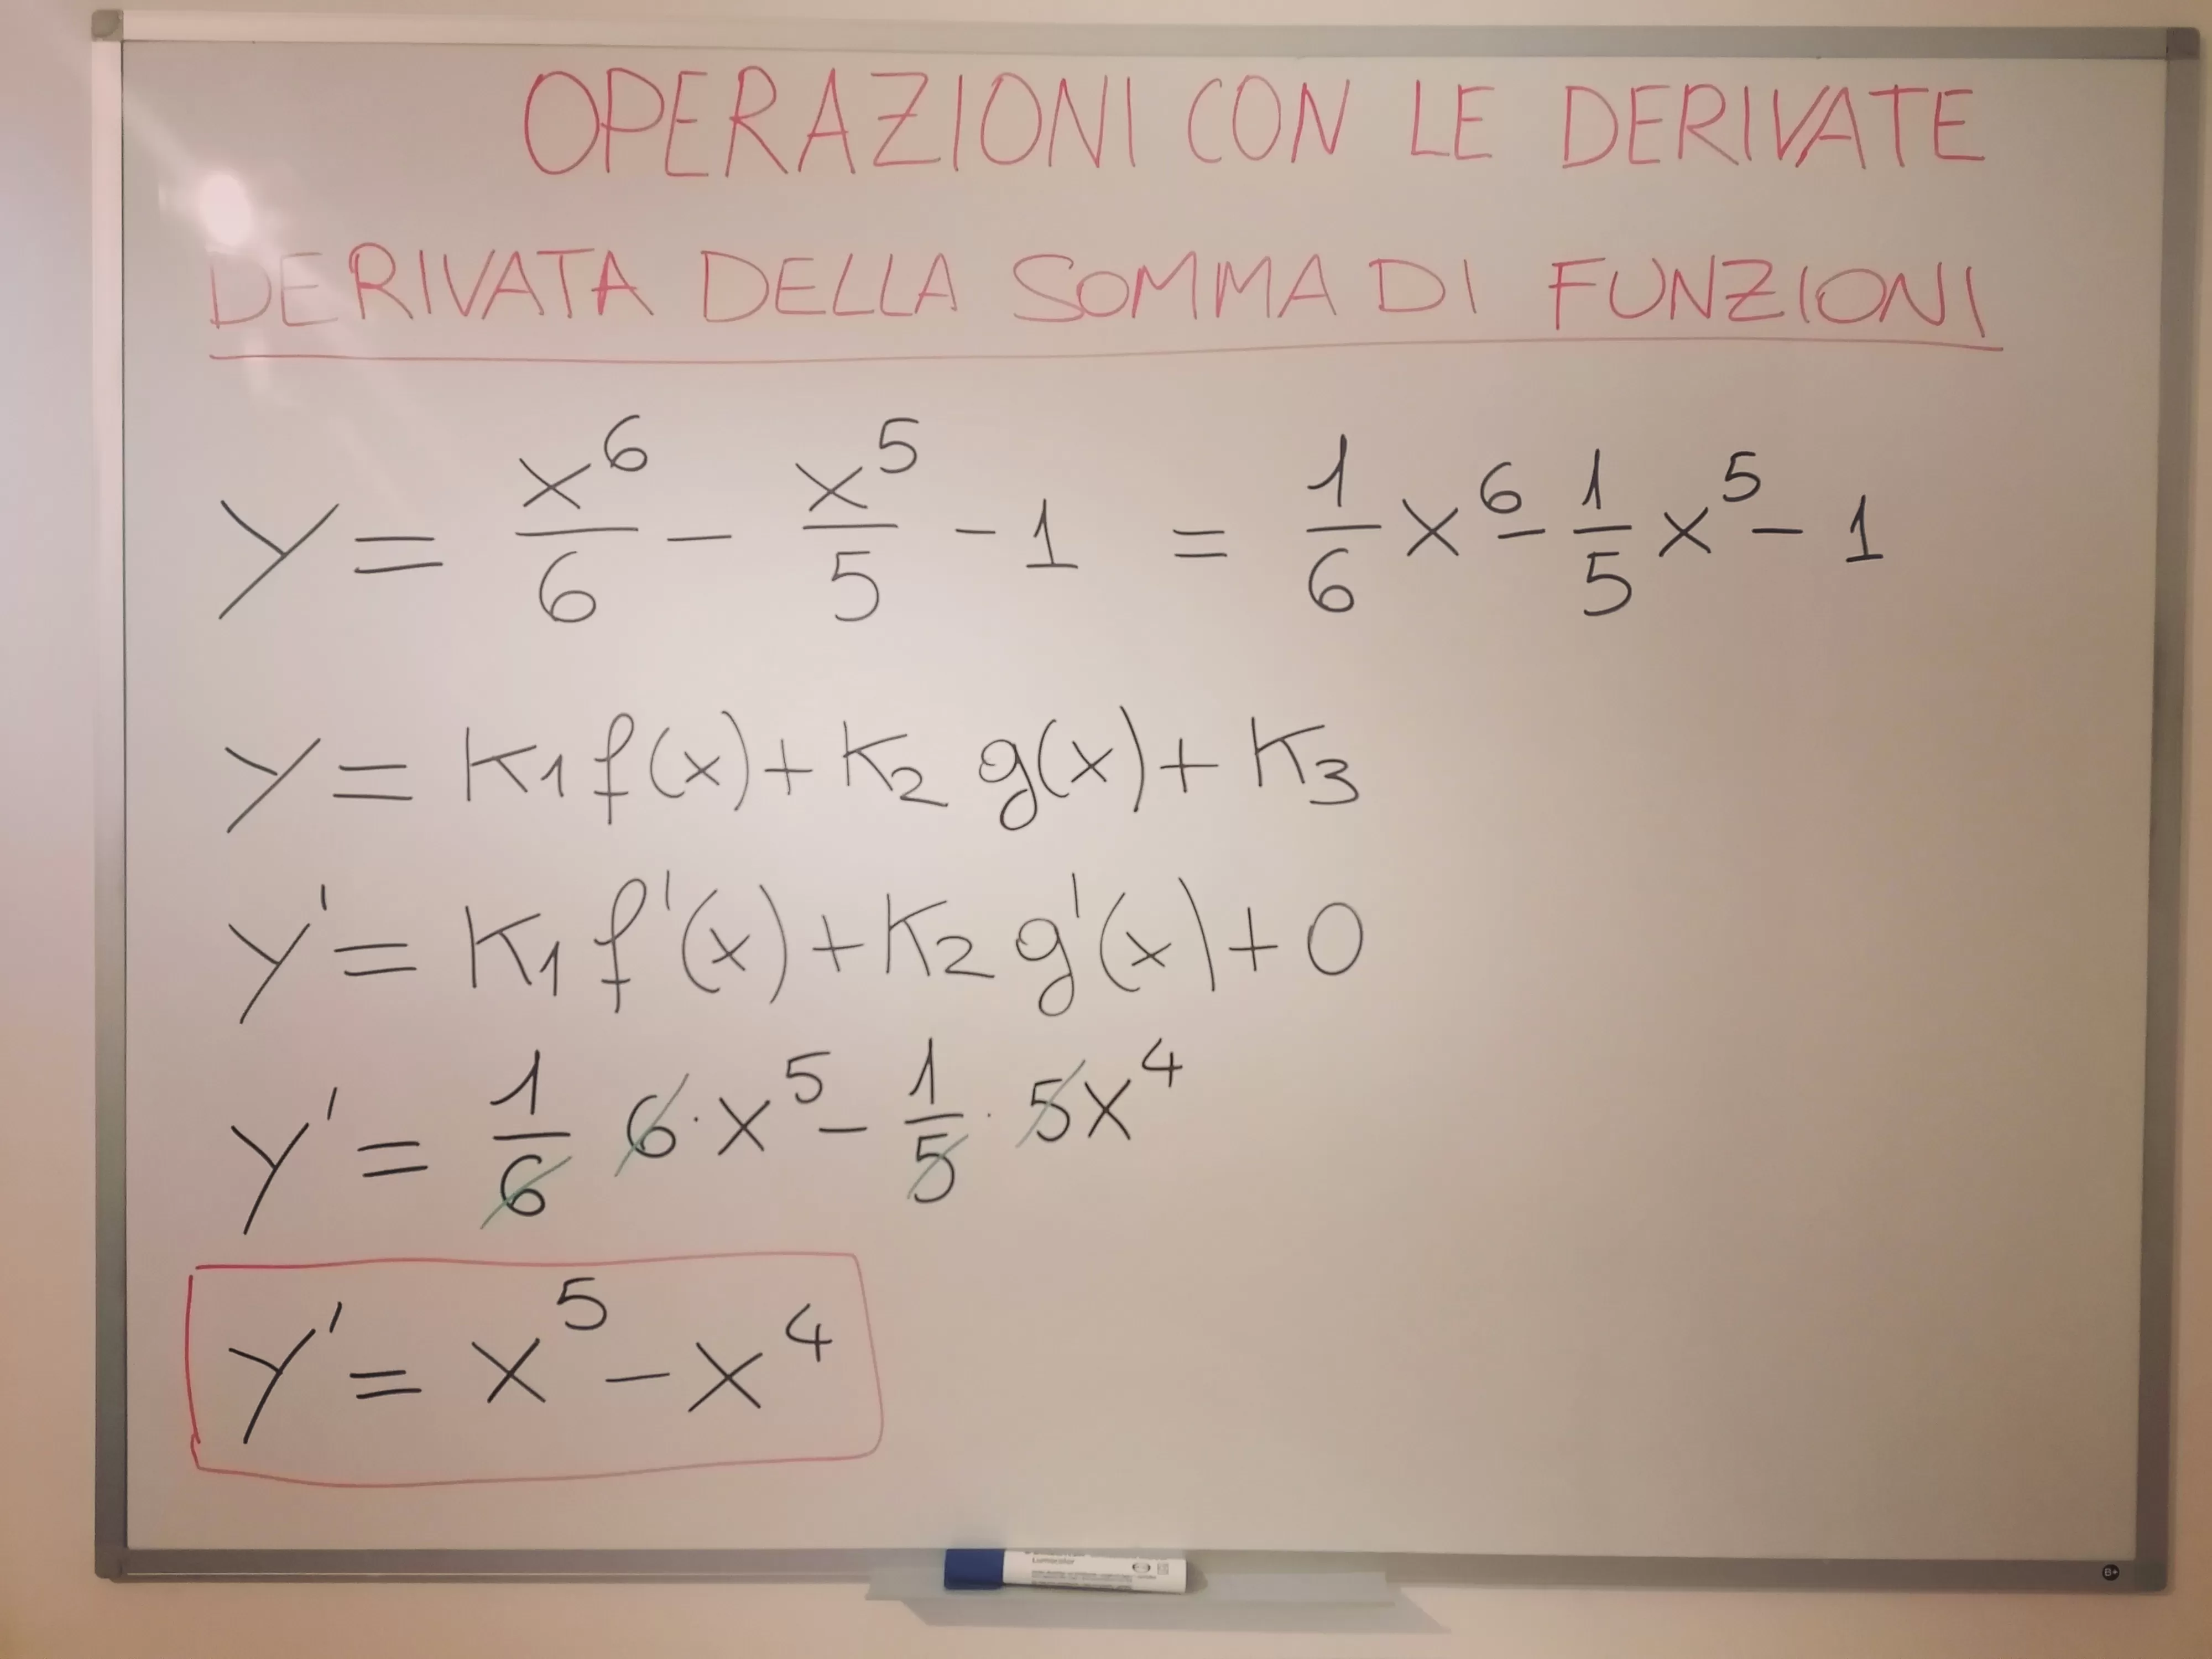 Derivata di y= 1/6 x^6 - 1/5 x^5 - 1